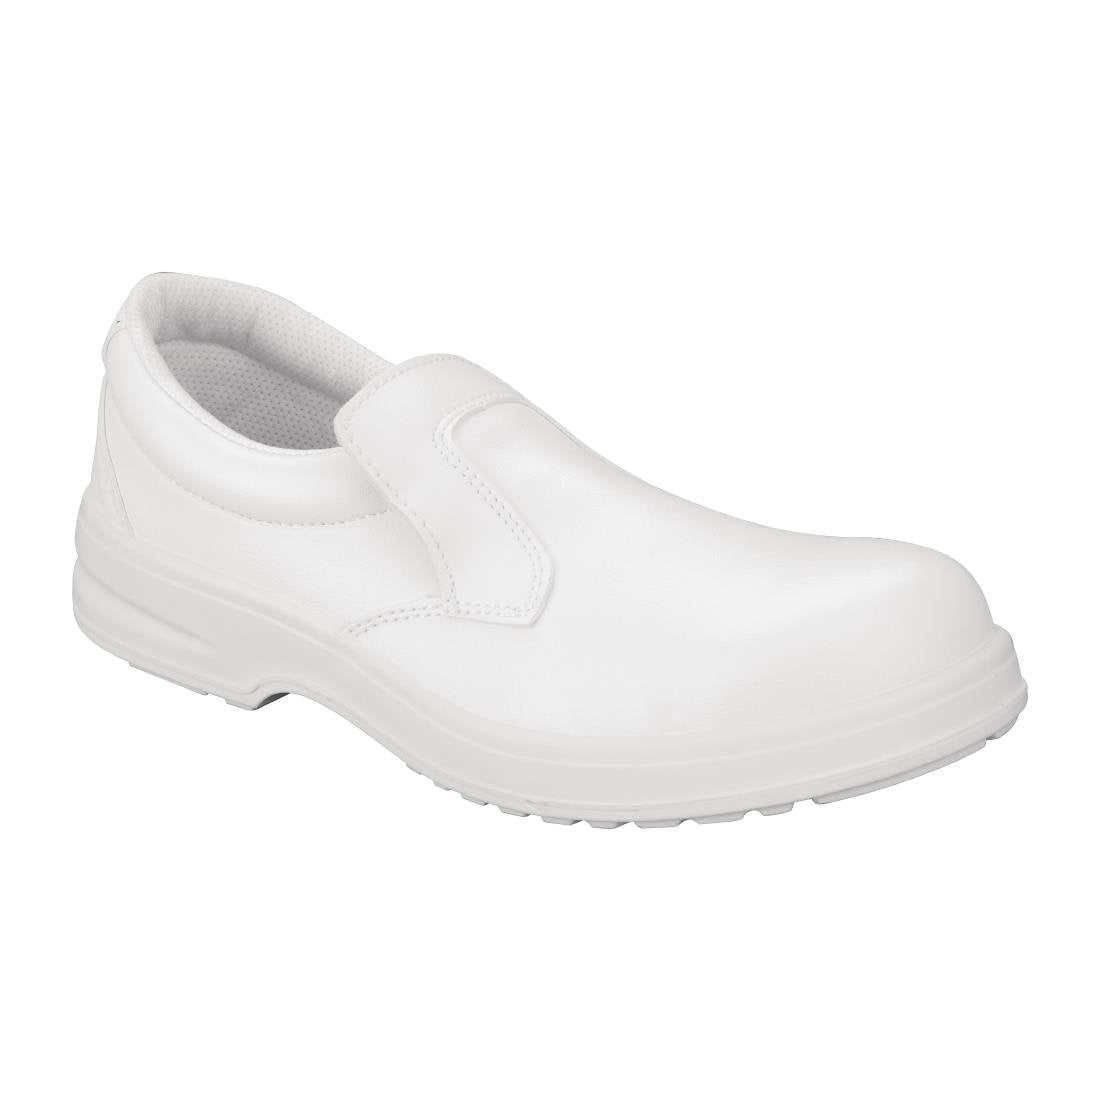 Slipbuster Footwear Slipbuster Lite Safety Slip On White - Size 42